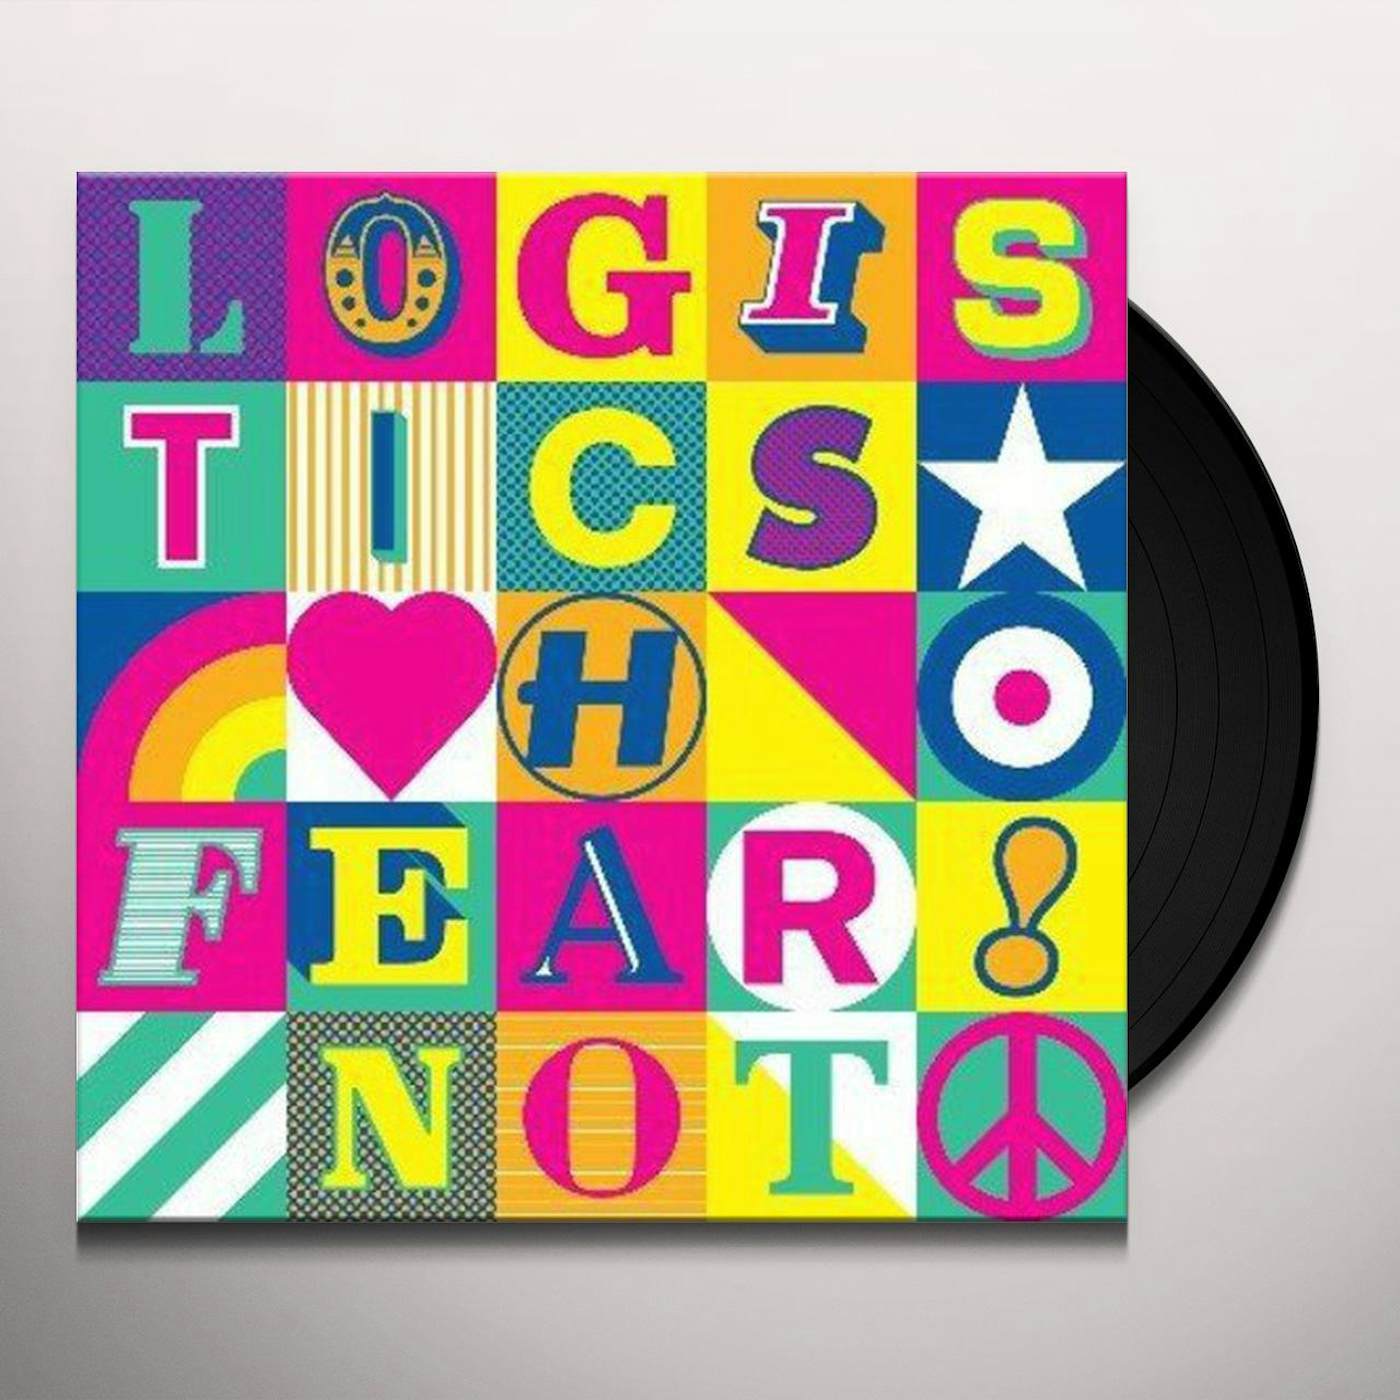 Logistics Fear Not Vinyl Record